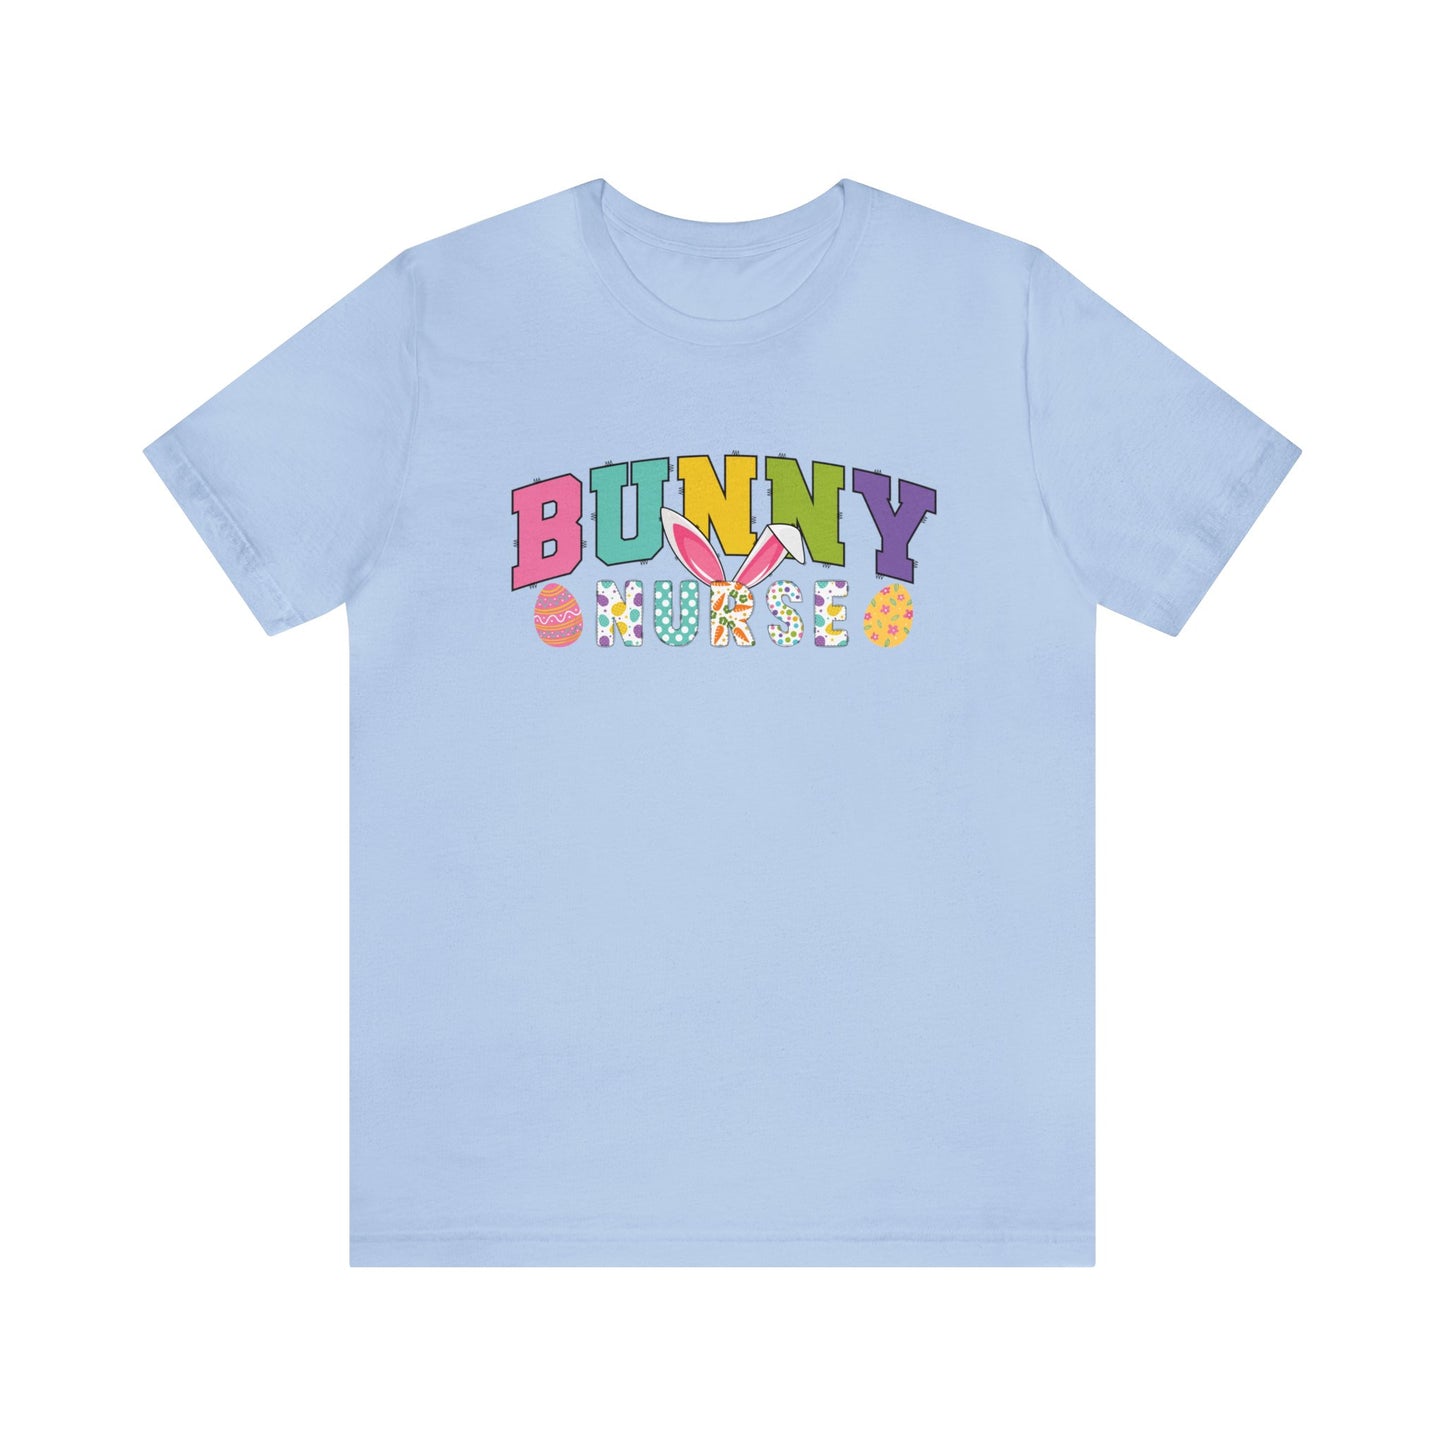 Bunny Nurse Shirt, Easter Shirt, Bunny Shirt, Happy Easter Shirt, Easter Bunny Shirt, Nurse Shirt